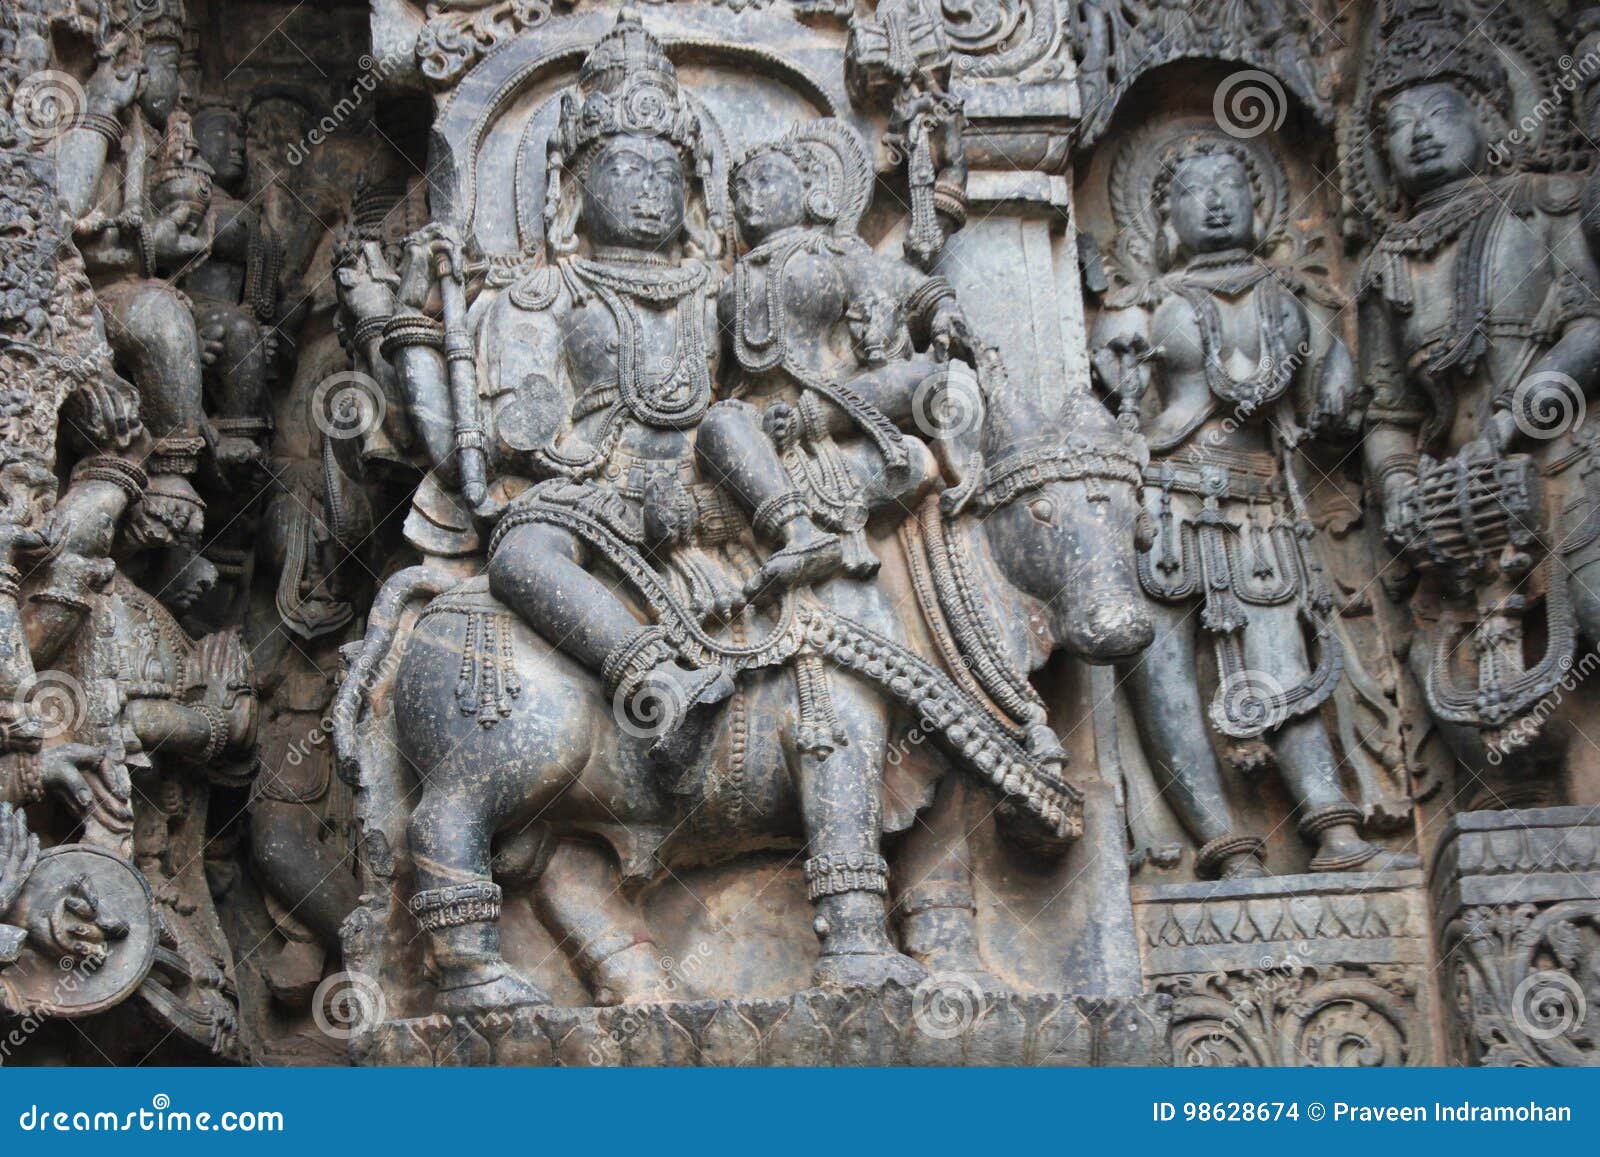 hoysaleswara temple wall carving of uma maheswara lord shiva and parvati